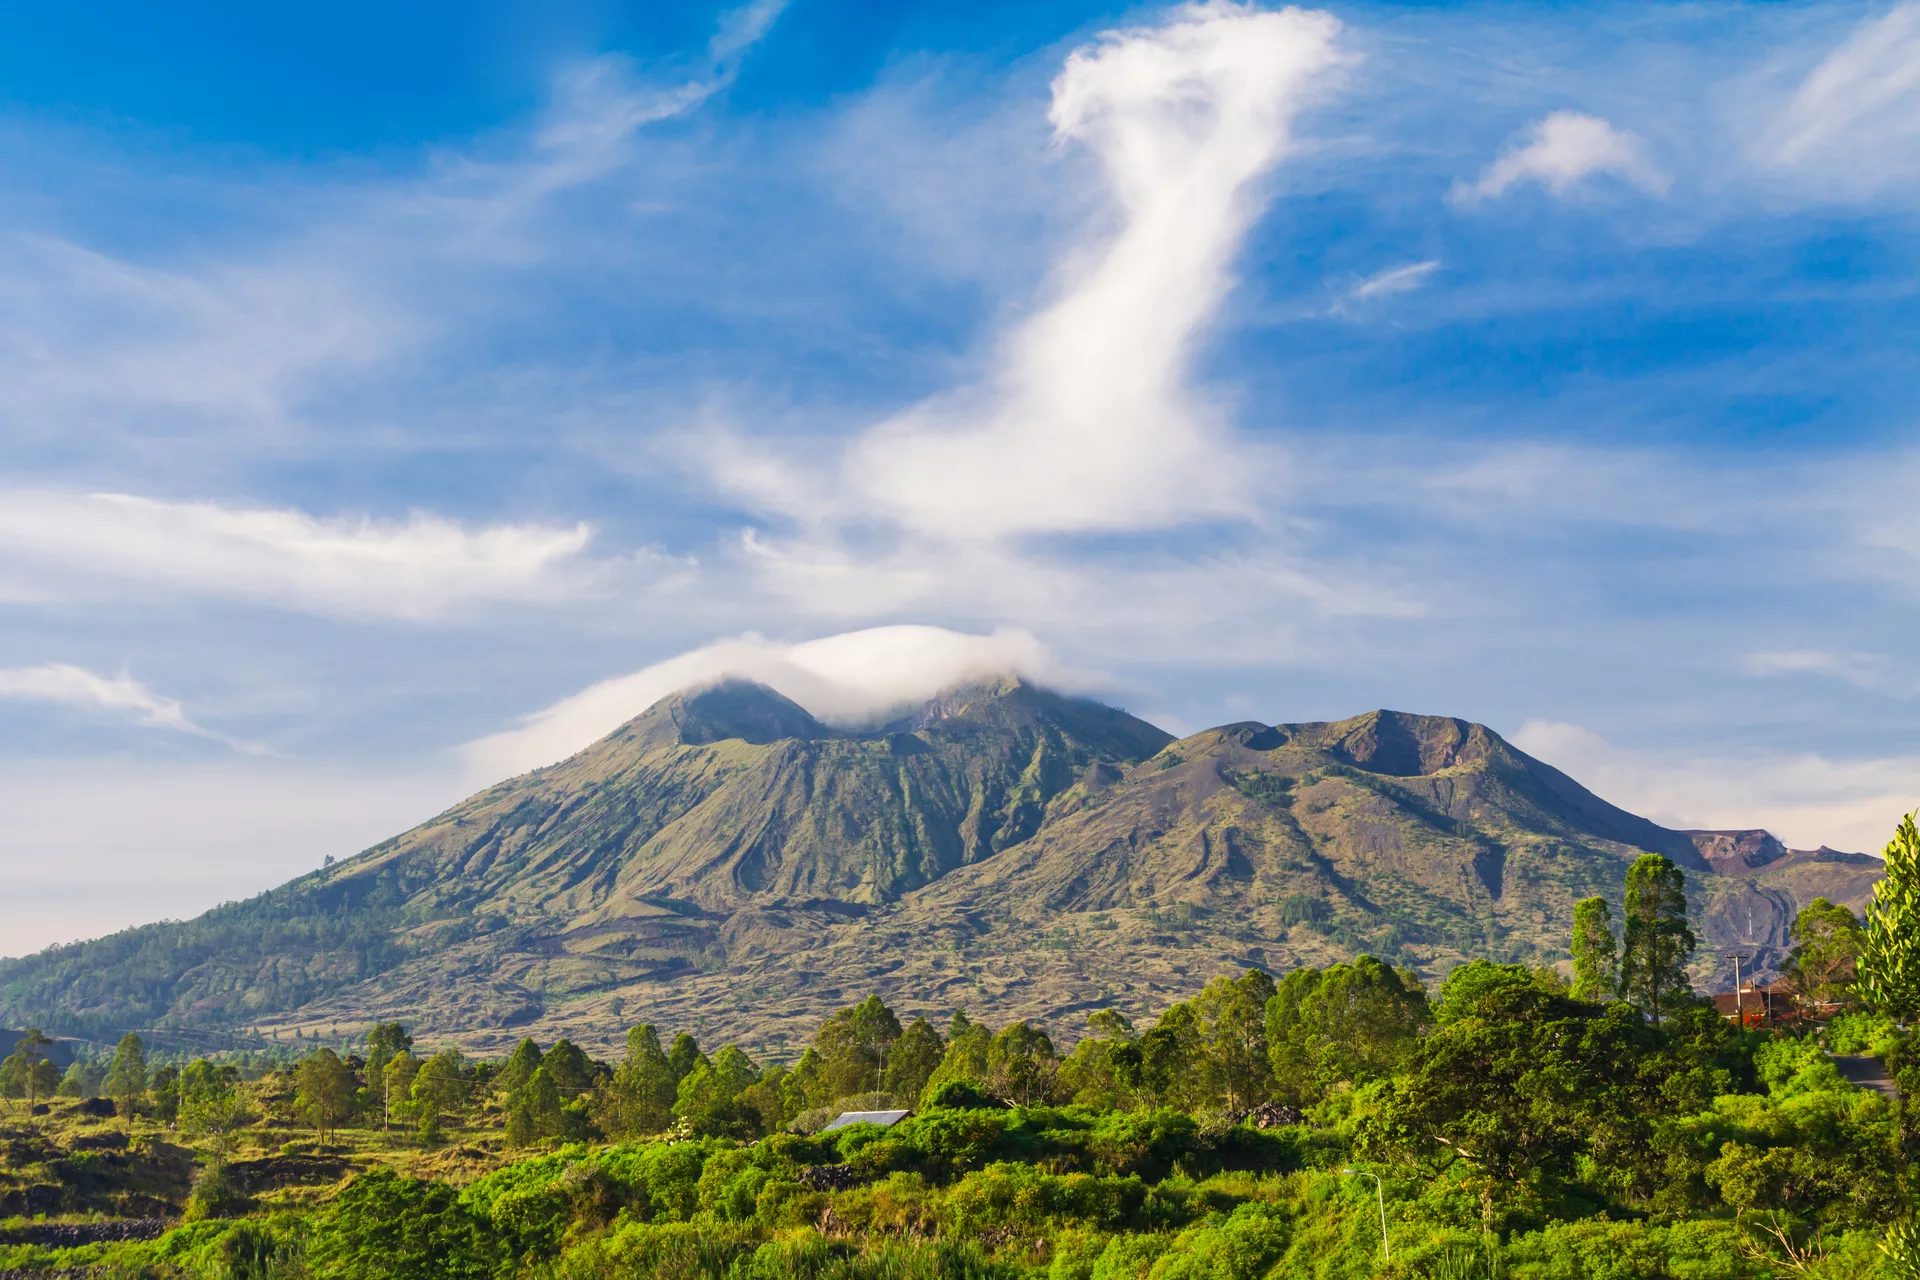 Where is Bali - Mount Agung